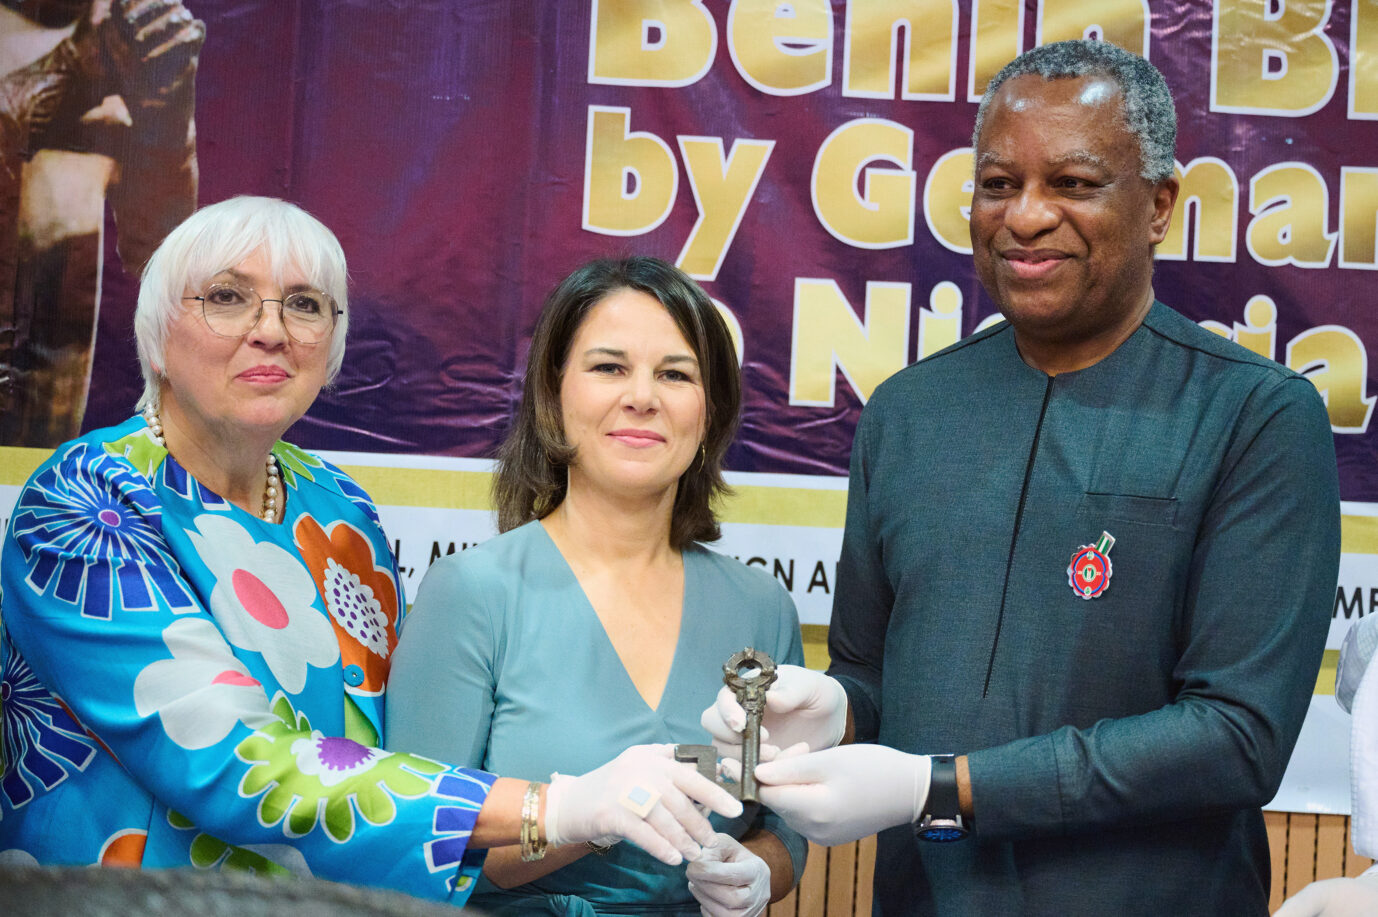 Feministische Außenpolitik: Außenministerin Annalena Baerbock (Grüne, m.) überreicht eine Benin-Bronze beim Besuch in Nigeria. Neben ihr steht ihre Parteifreundin Claudia Roth.